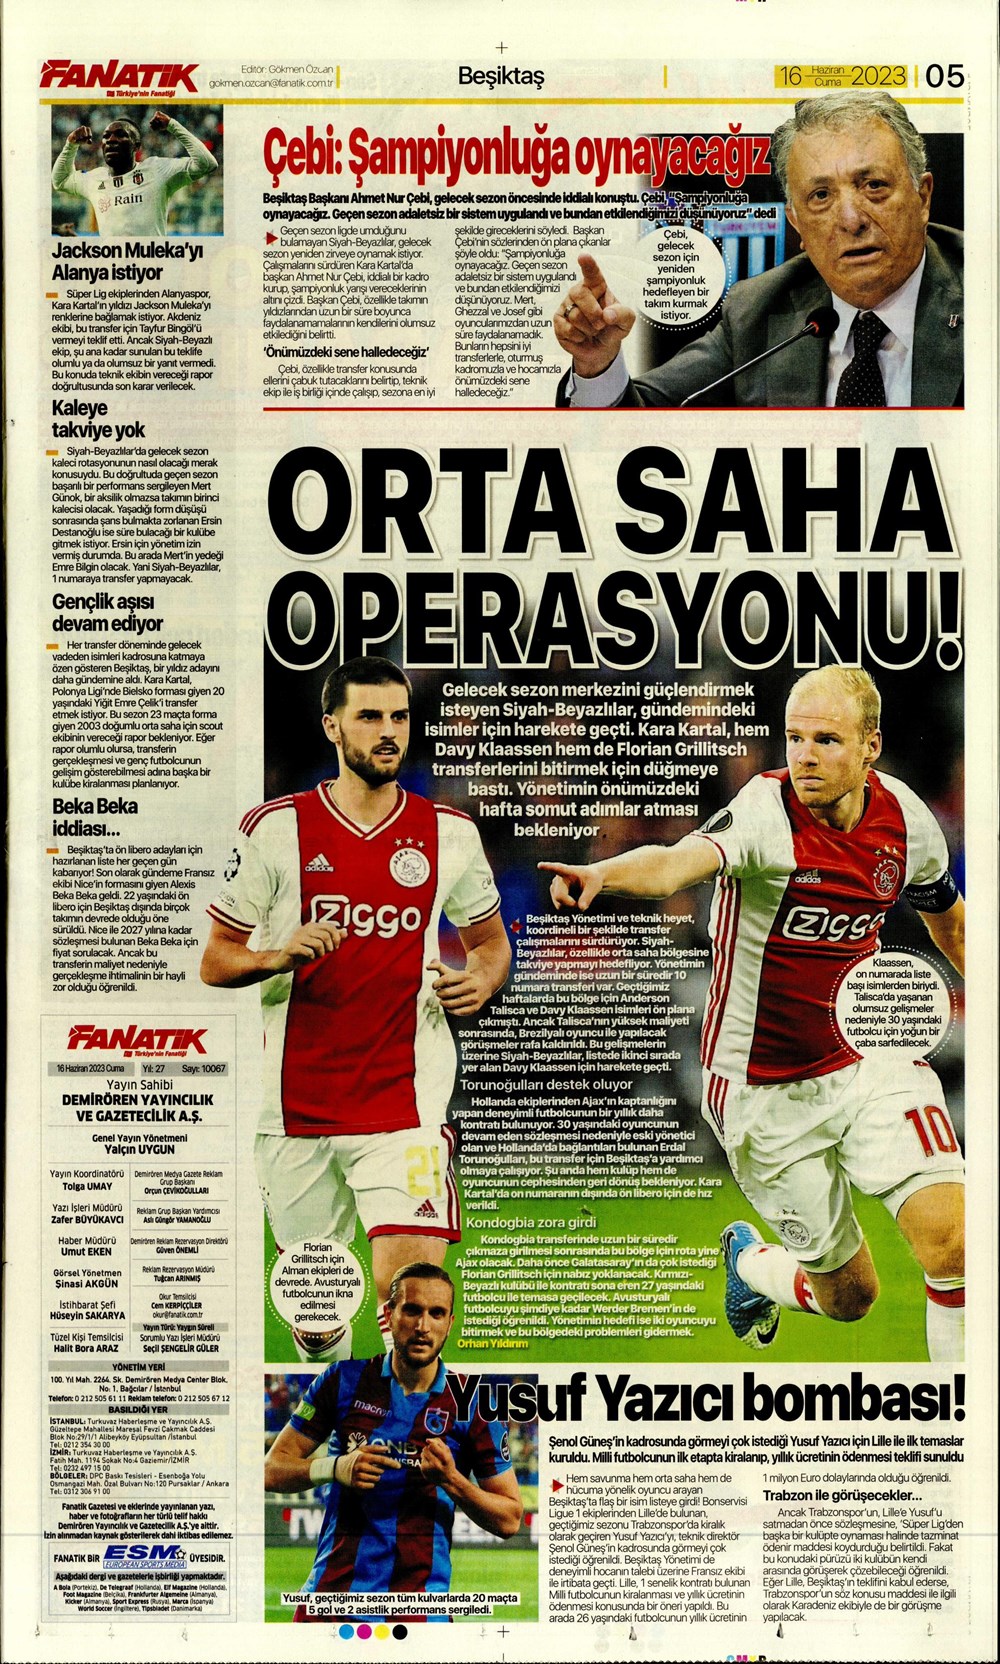 "Dzeko çok yakın" Sporun manşetleri (16 Haziran 2023)  - 7. Foto